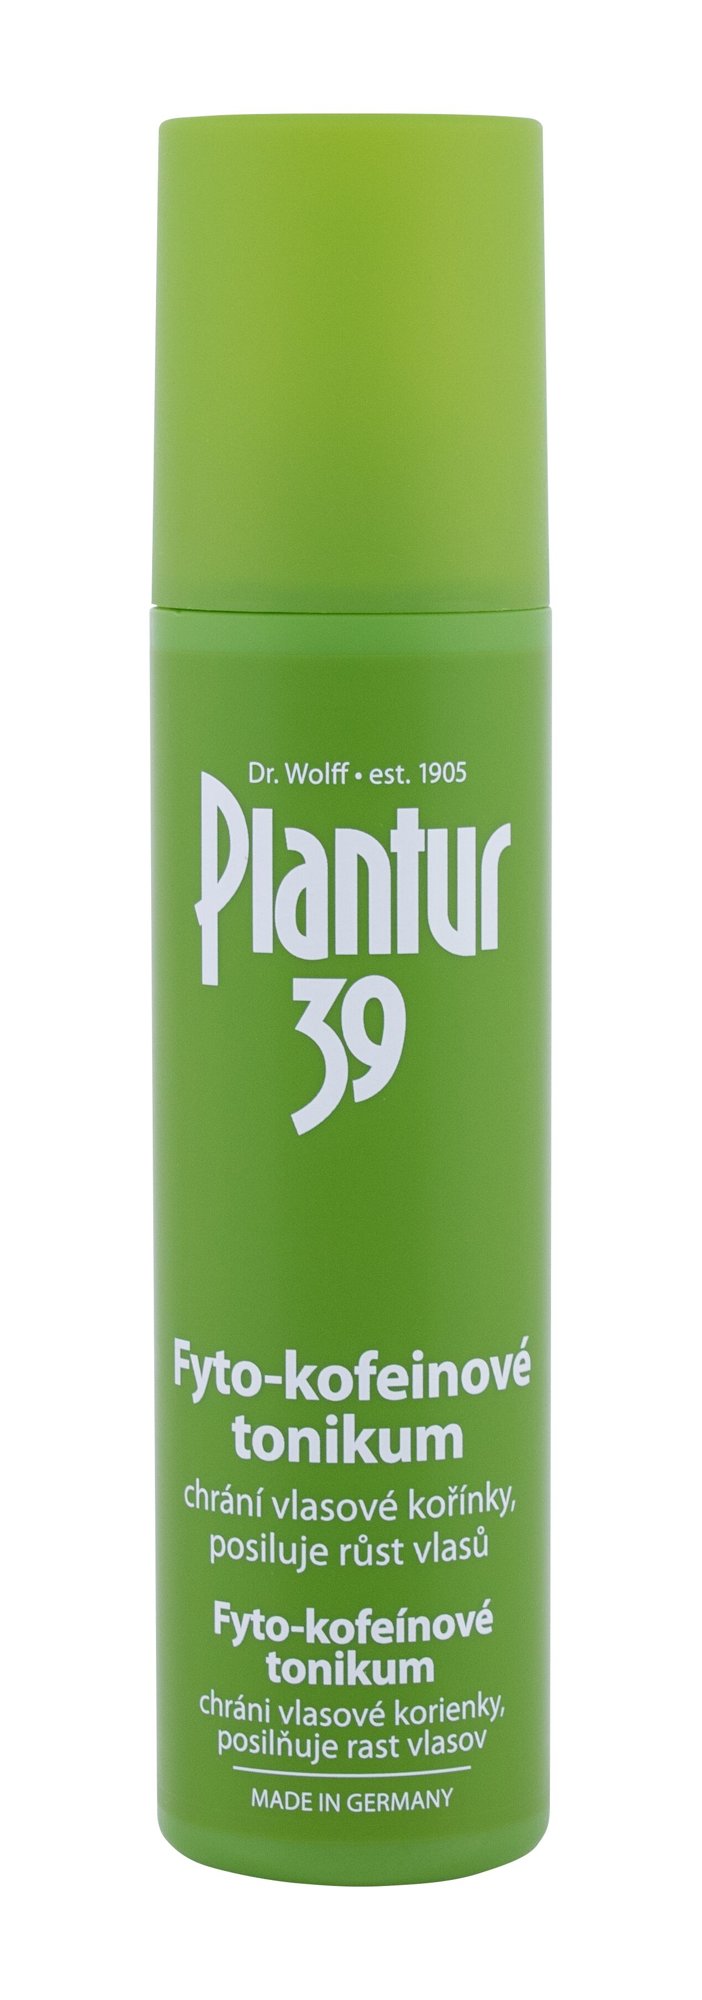 Plantur 39 Phyto-Coffein Tonic 200ml priemonė nuo plaukų slinkimo